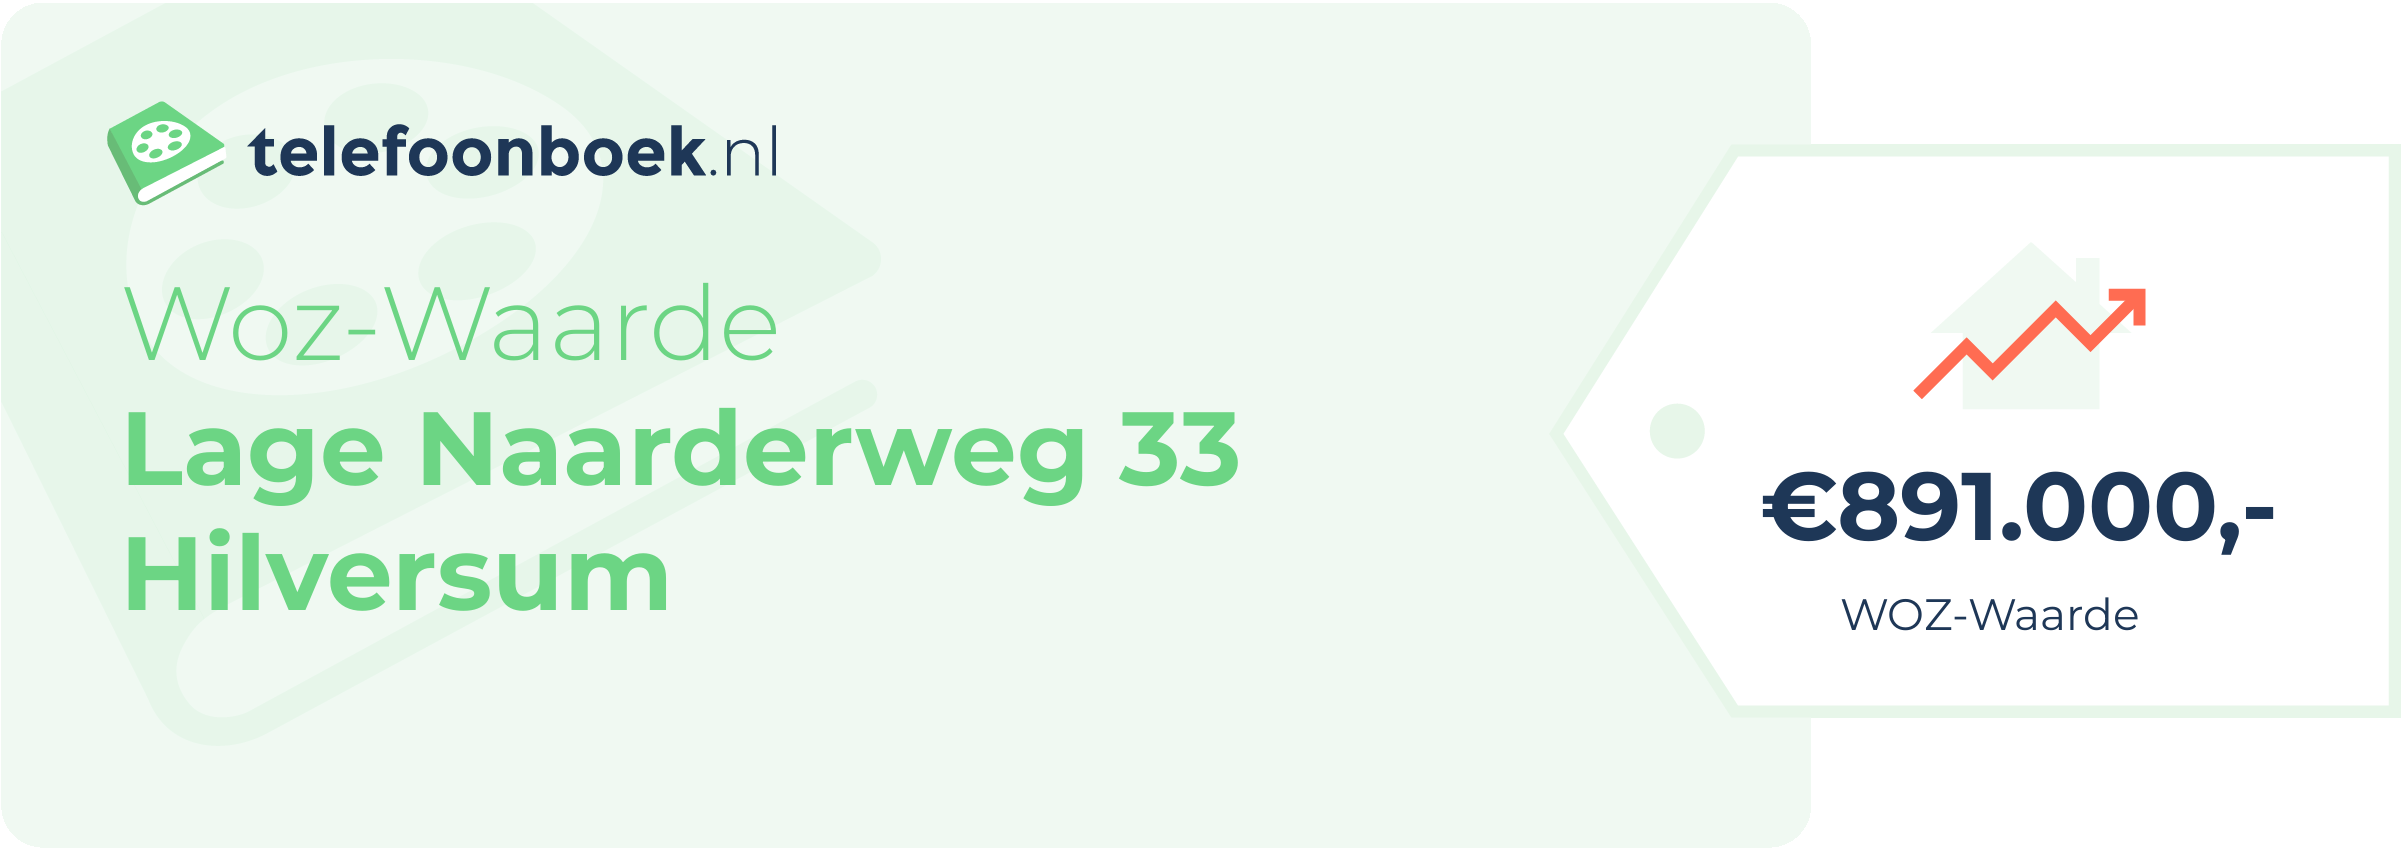 WOZ-waarde Lage Naarderweg 33 Hilversum